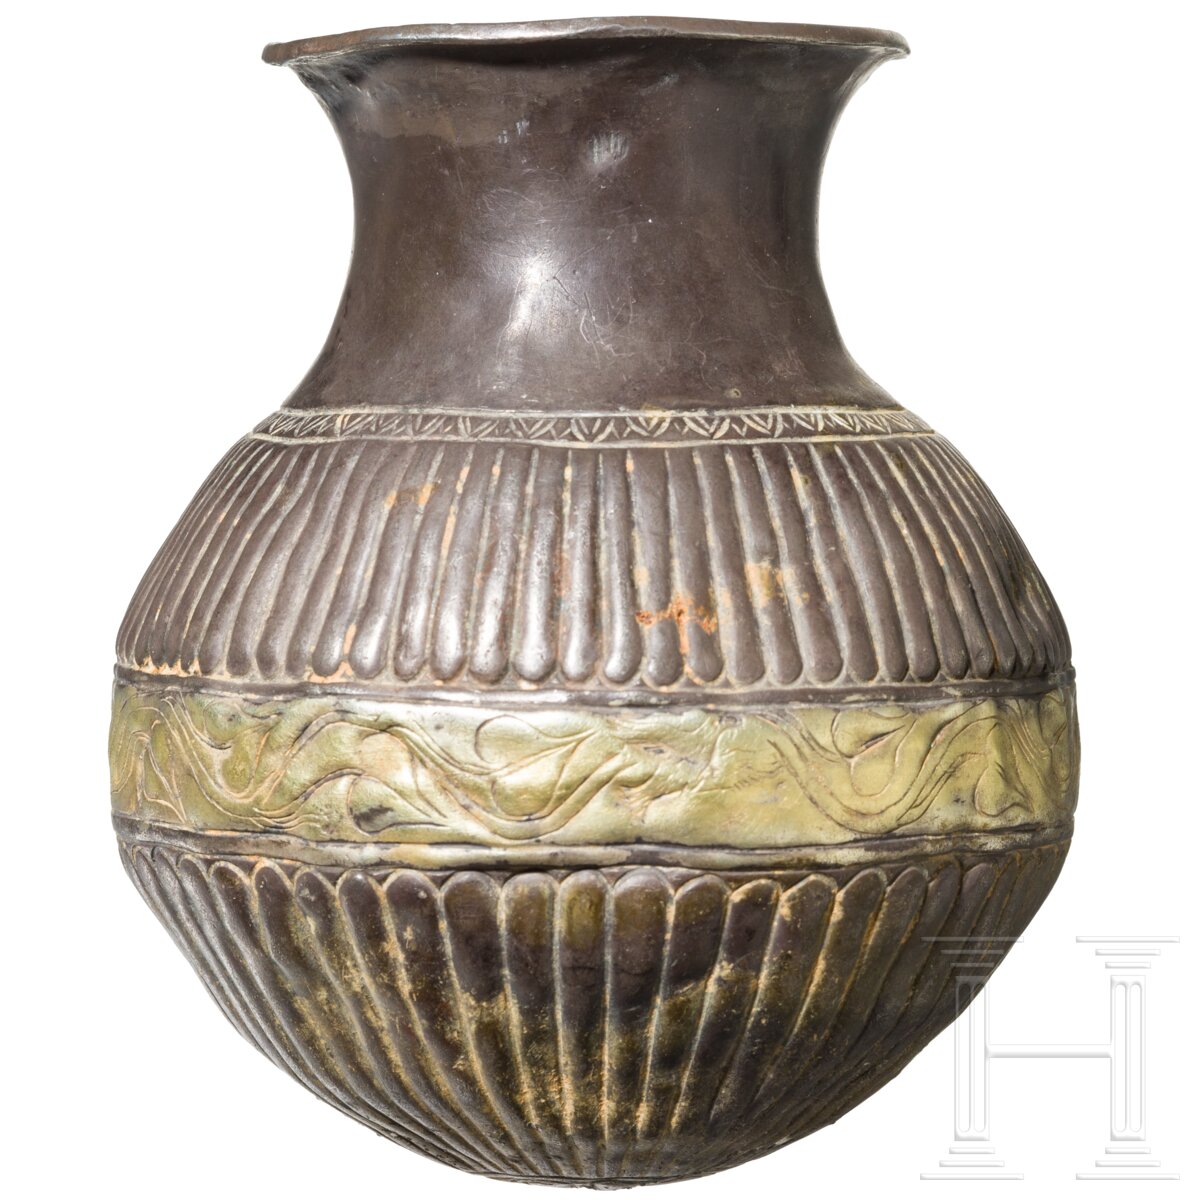 Silbergefäß mit getriebenem und geritztem Dekor, griechisch, 4. Jhdt. v. Chr. - Image 2 of 5